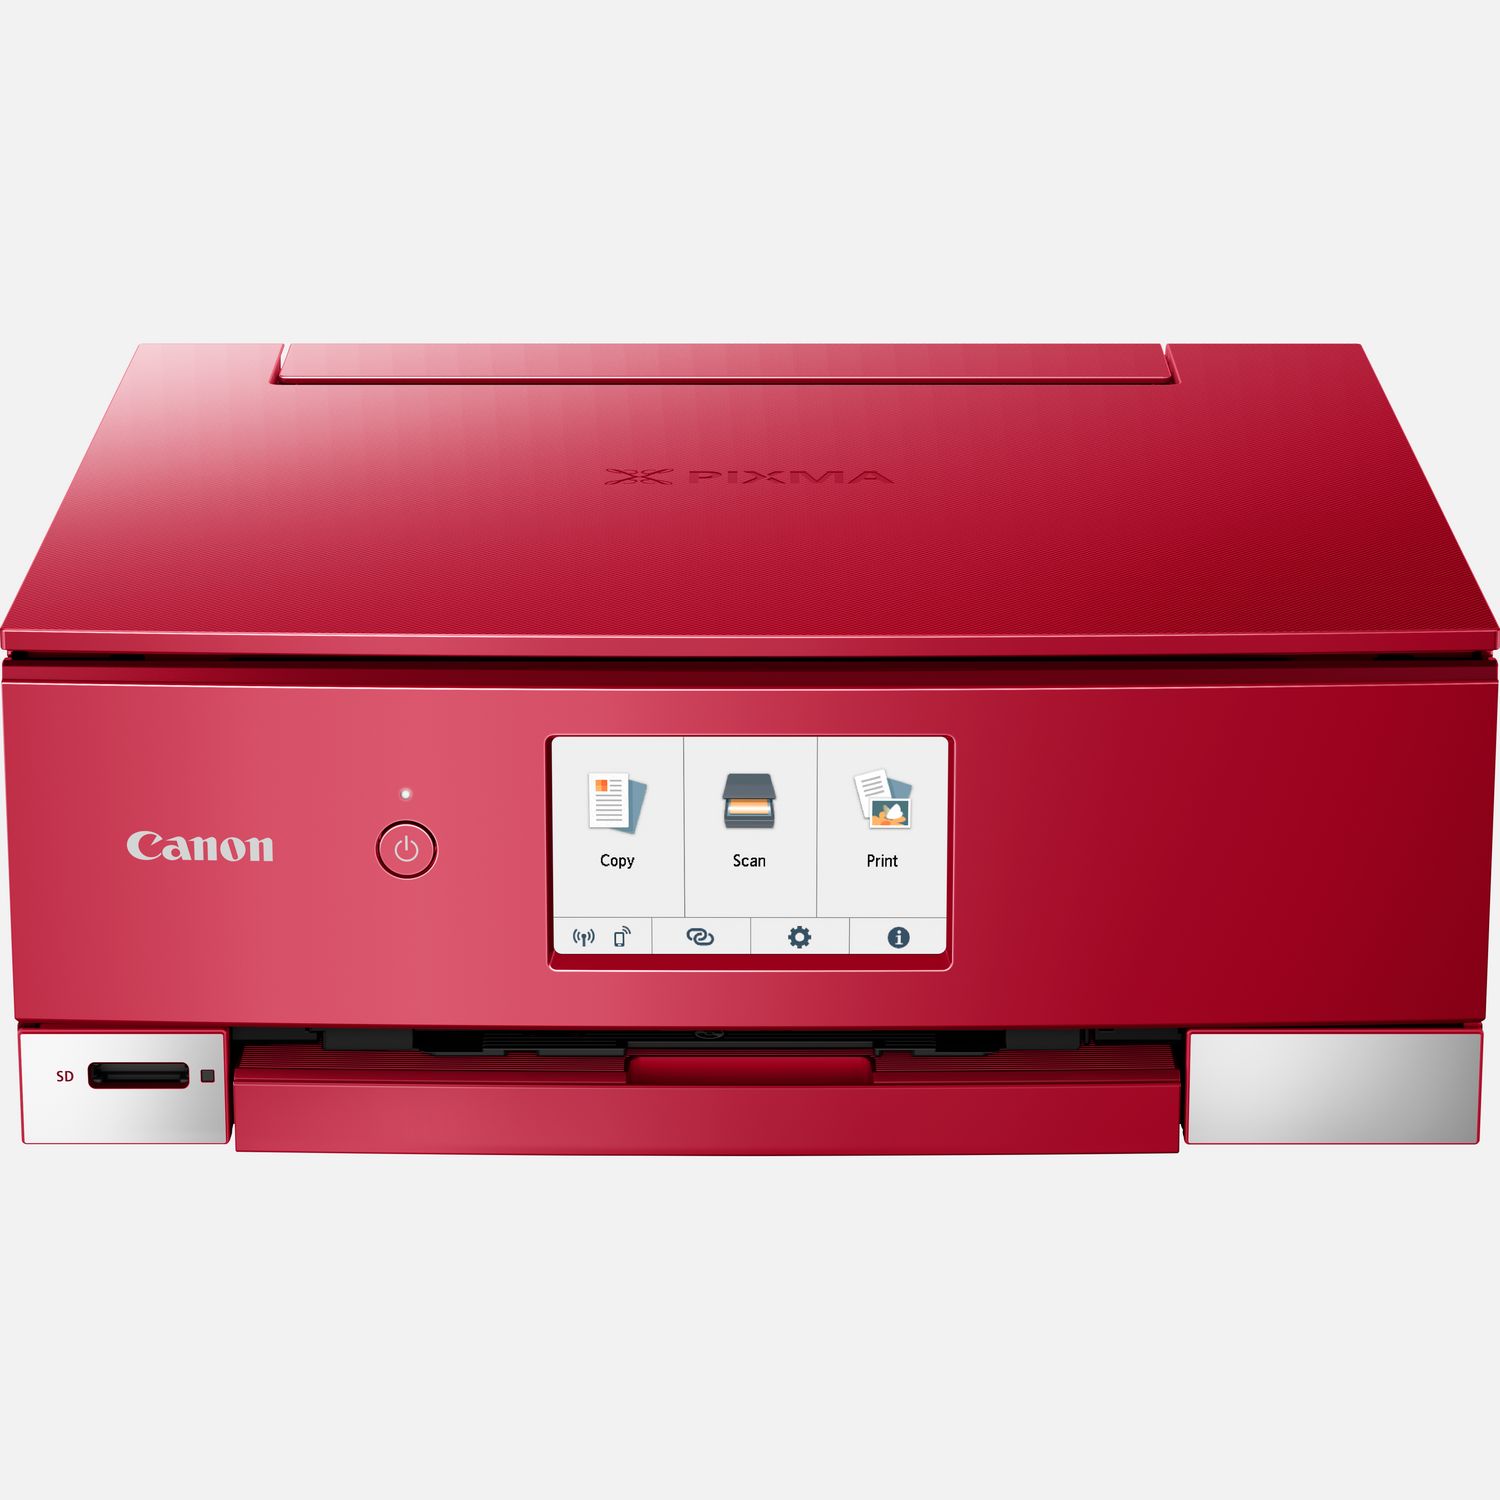 Image of Stampante fotografica wireless inkjet a colori multifunzione Canon PIXMA TS8352a, rosso